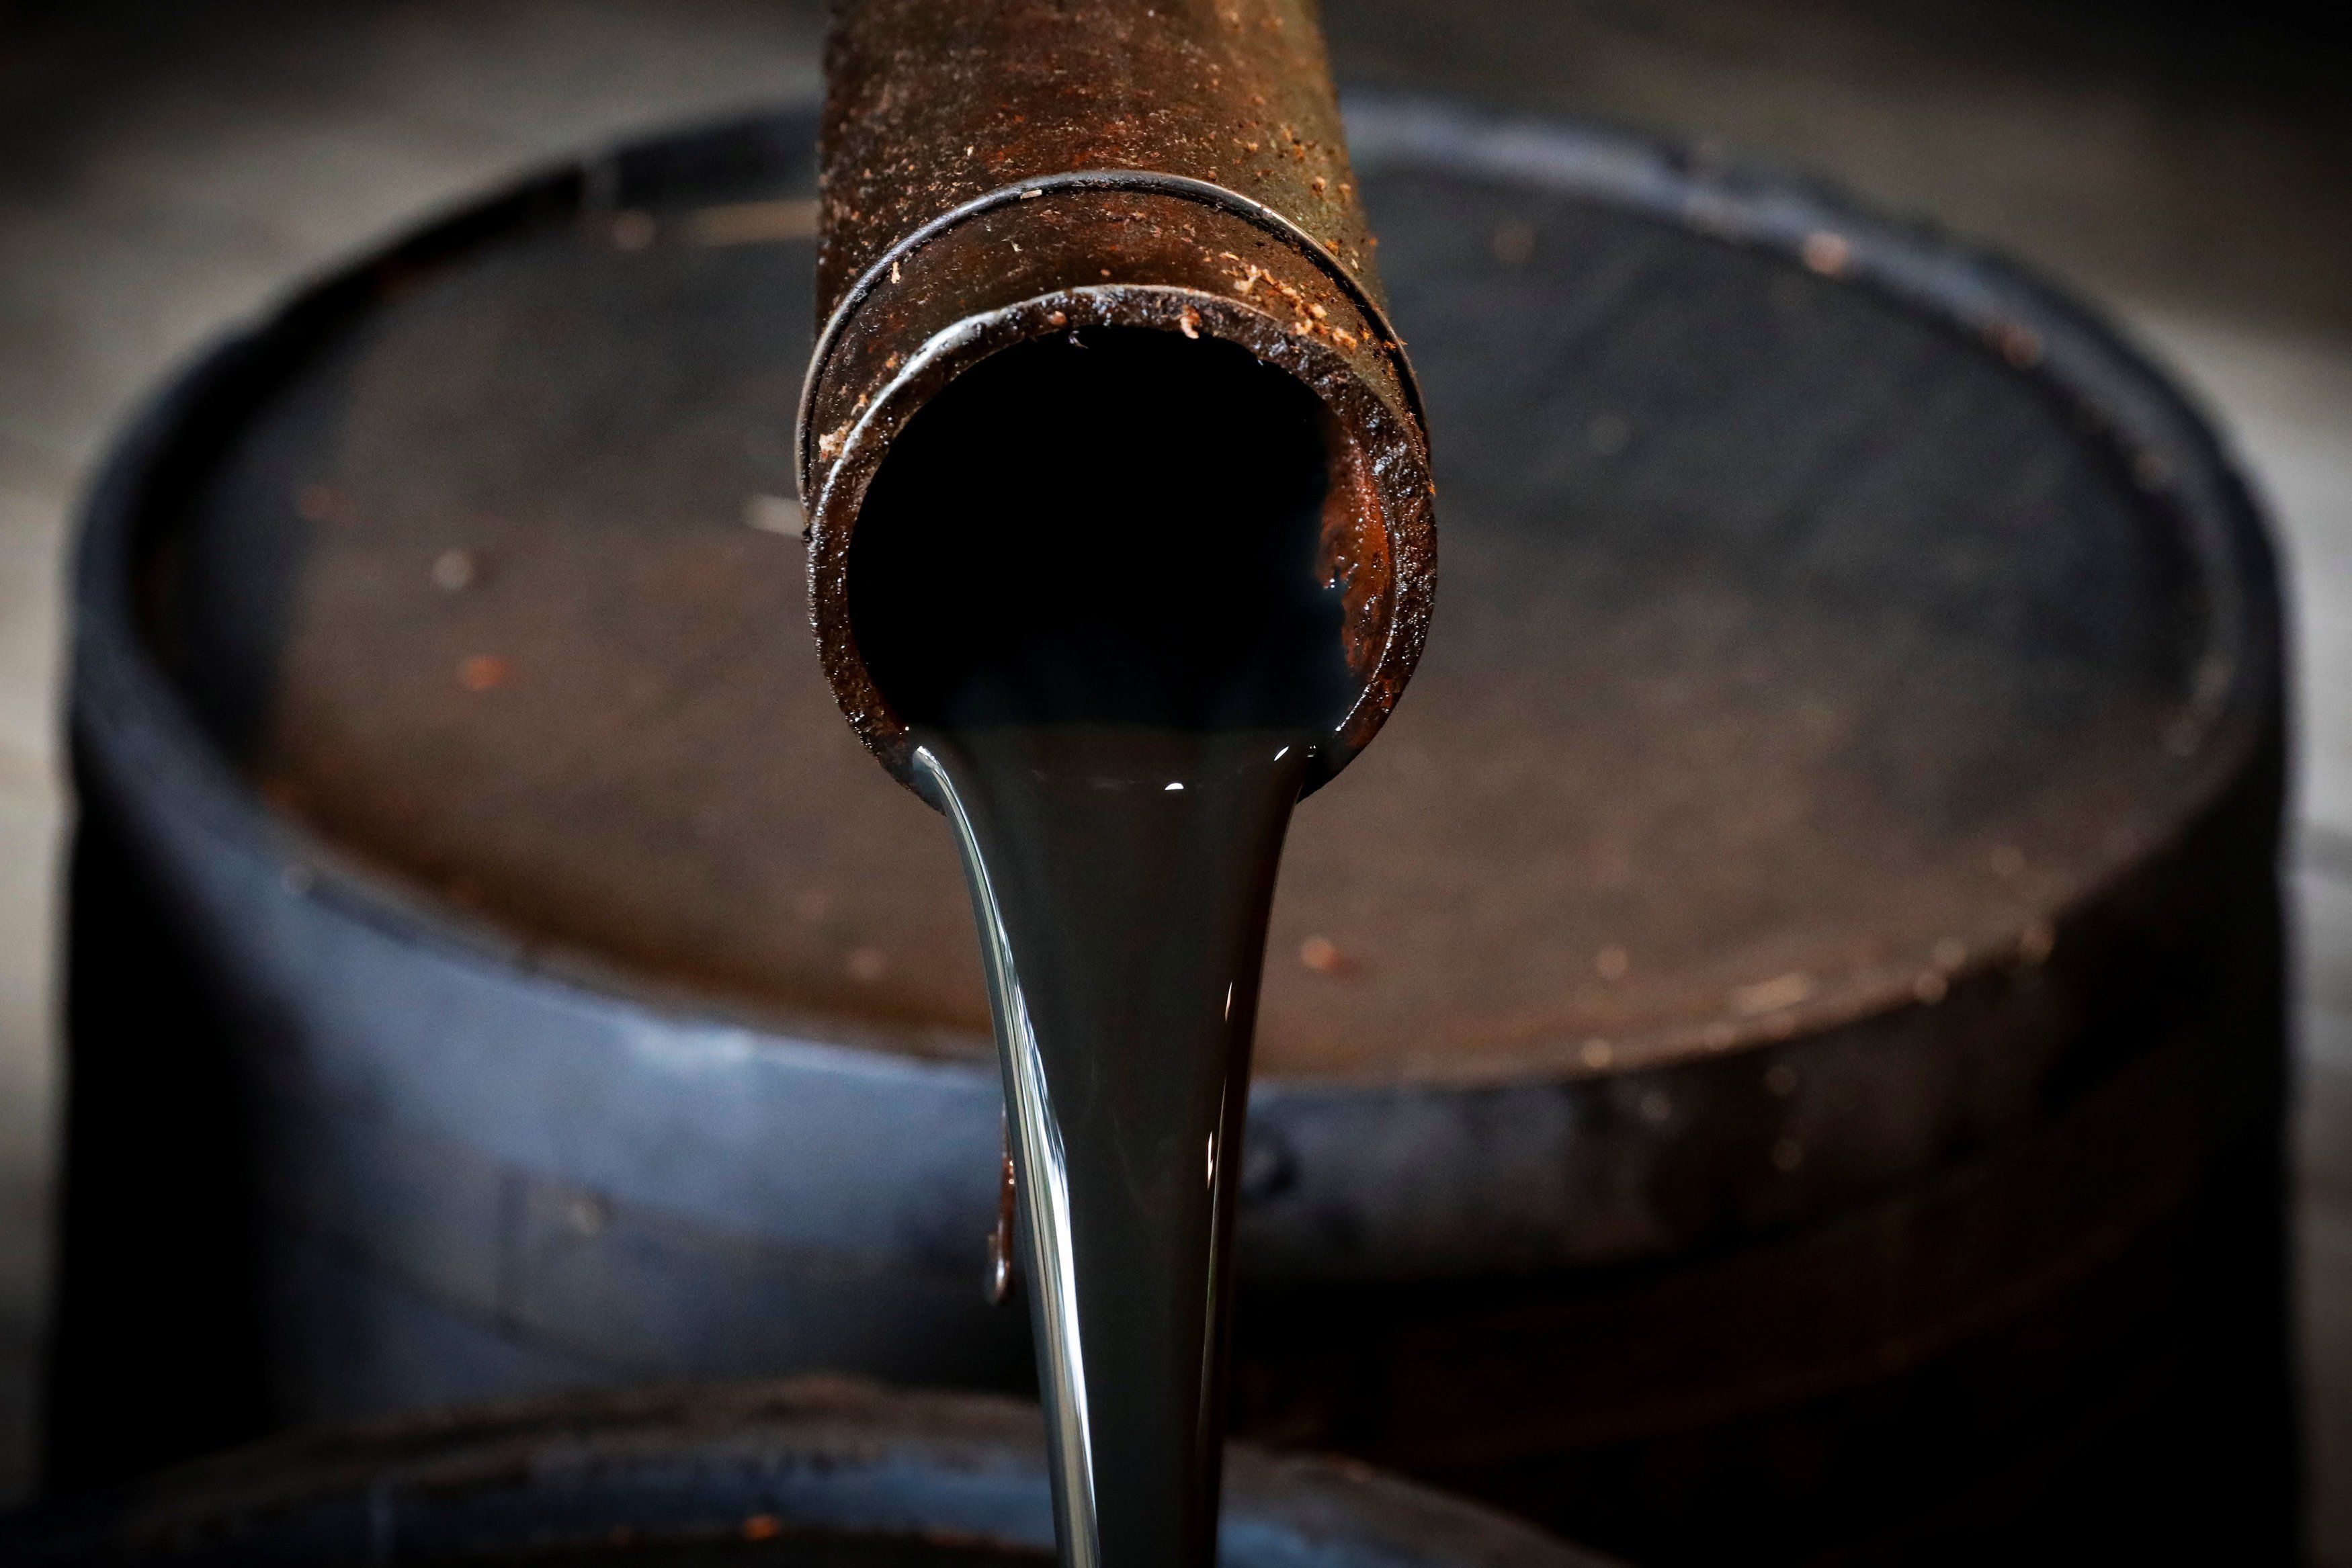 Giá&nbsp;dầu thô tăng giảm trái chiều